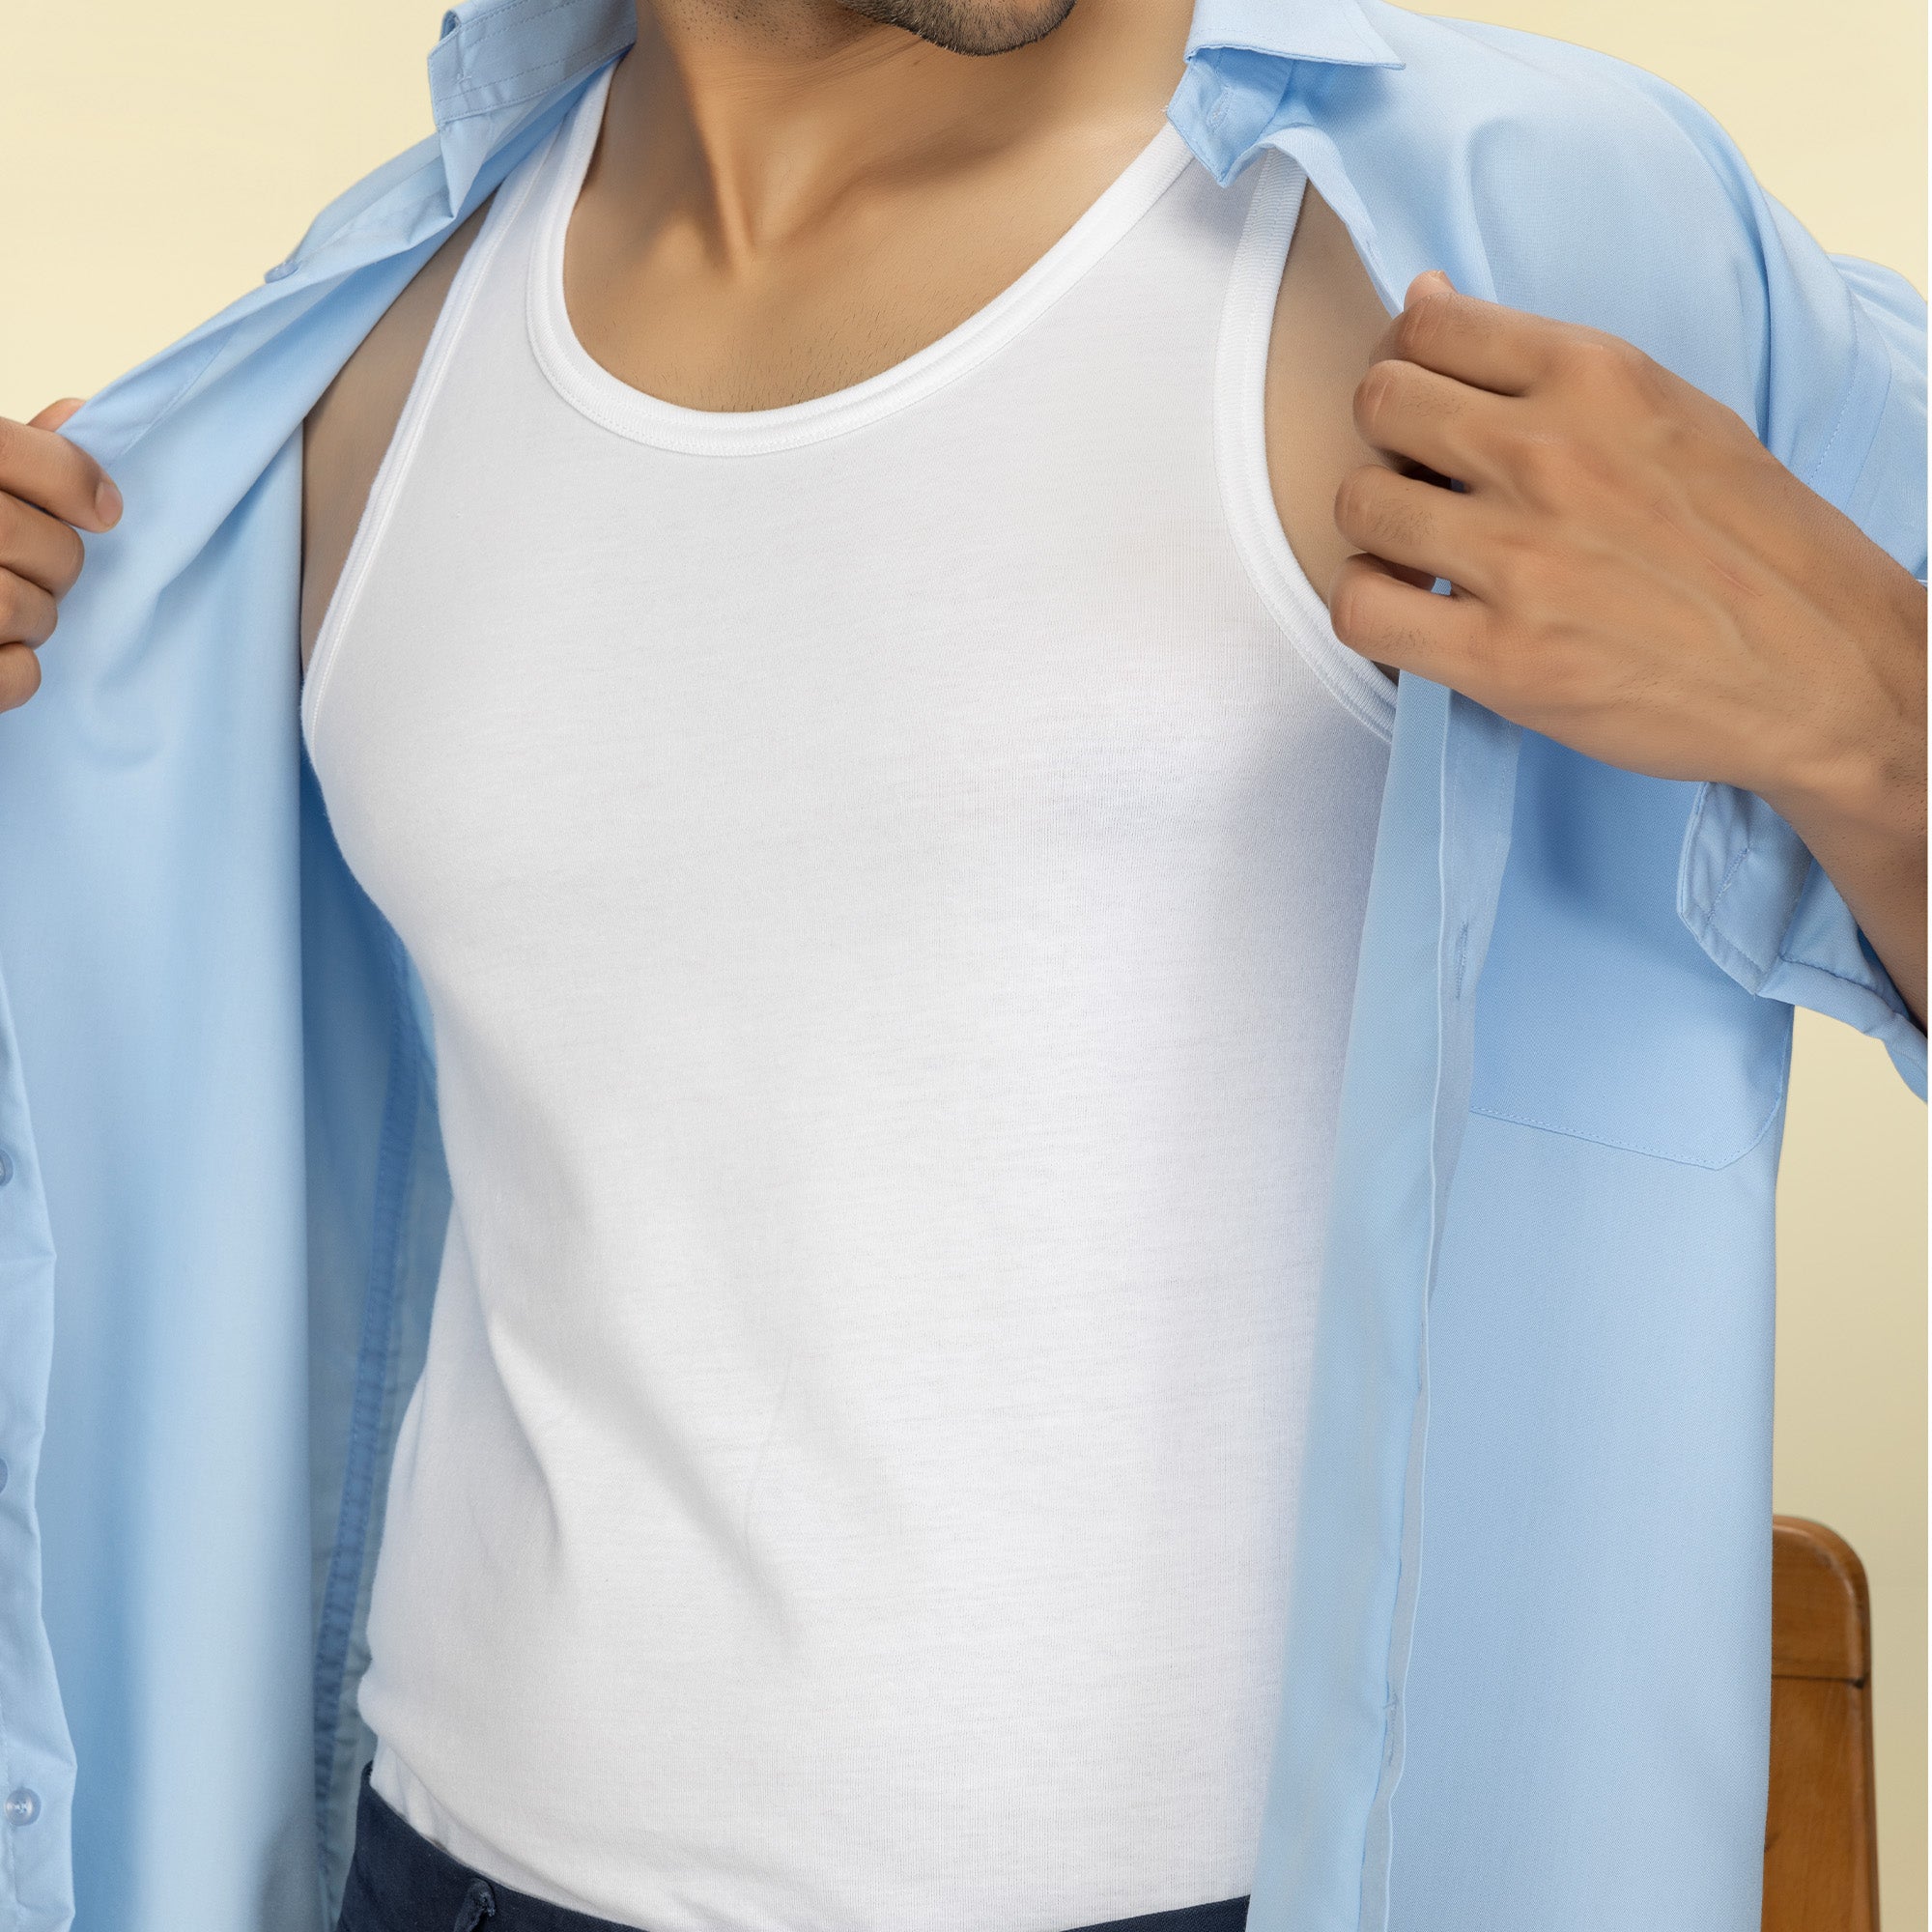 Aero Super Combed Cotton Vests For Men Polar White - XYXX Mens Apparels